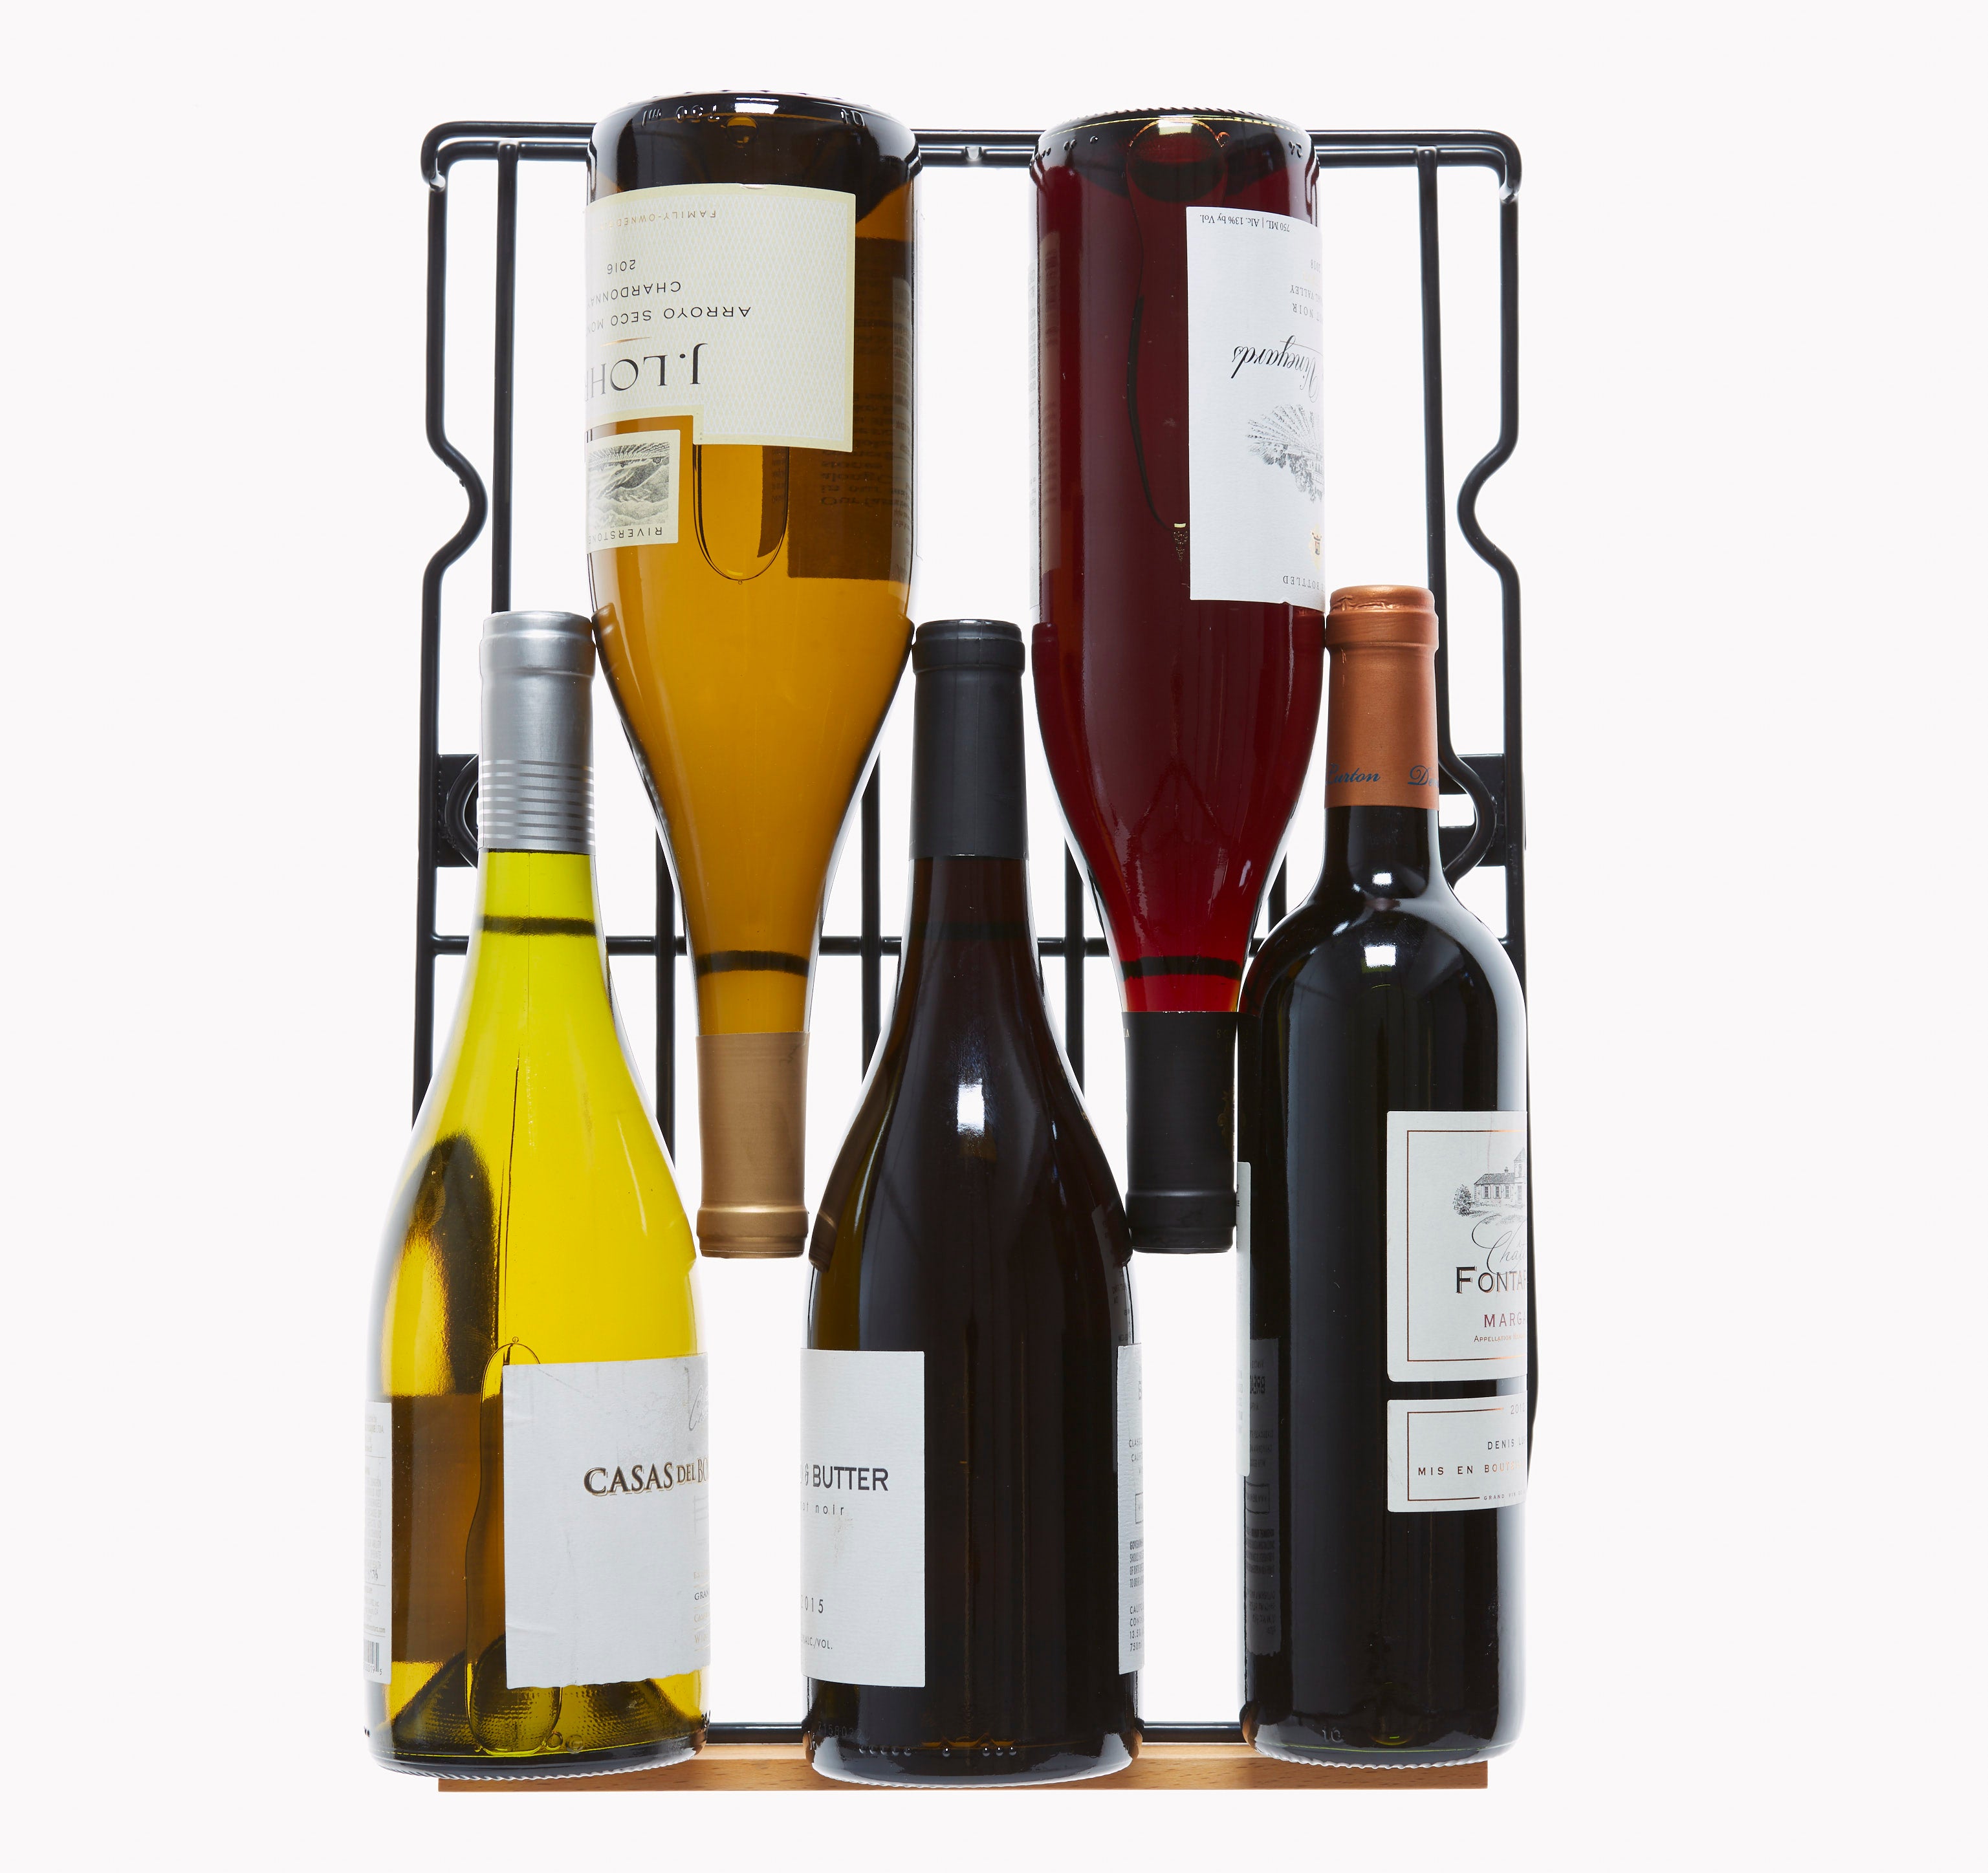 Smith & Hanks - 15" 32-Bottle Dual-Zone Built-in/Freestanding Wine Fridge Glass Door (RE100006)